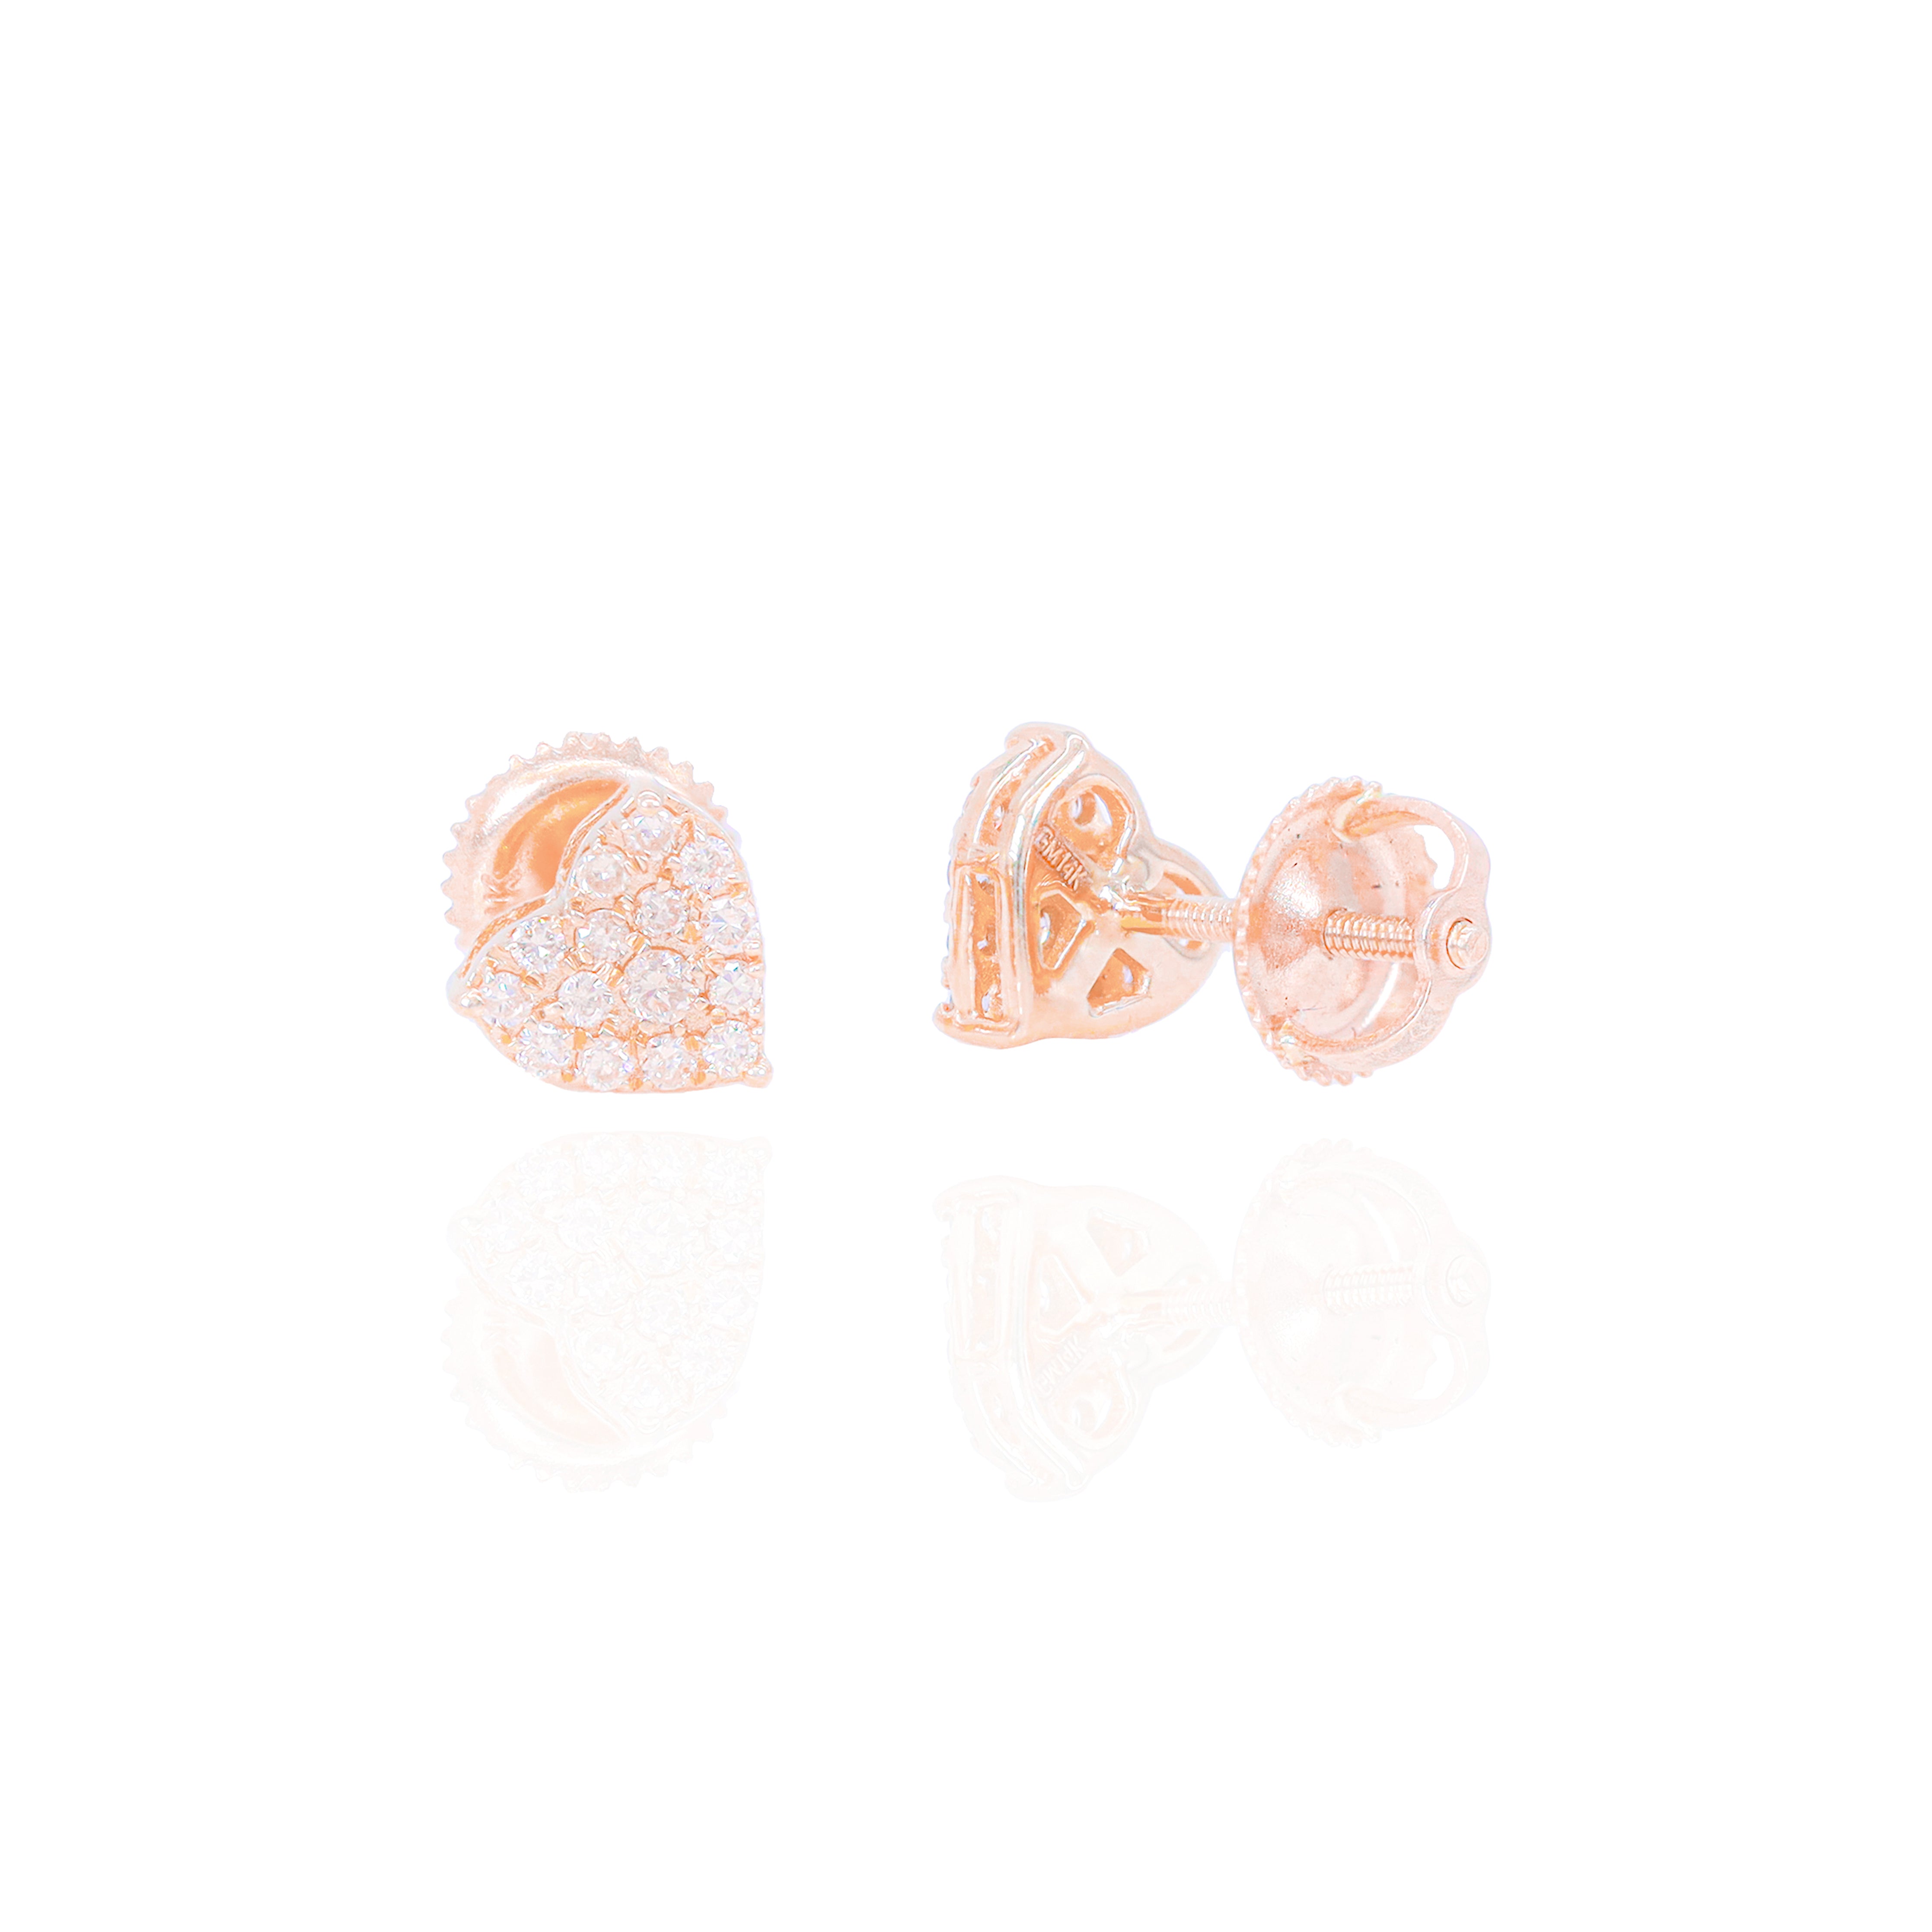 Cluster Heart Shaped Diamond Earrings